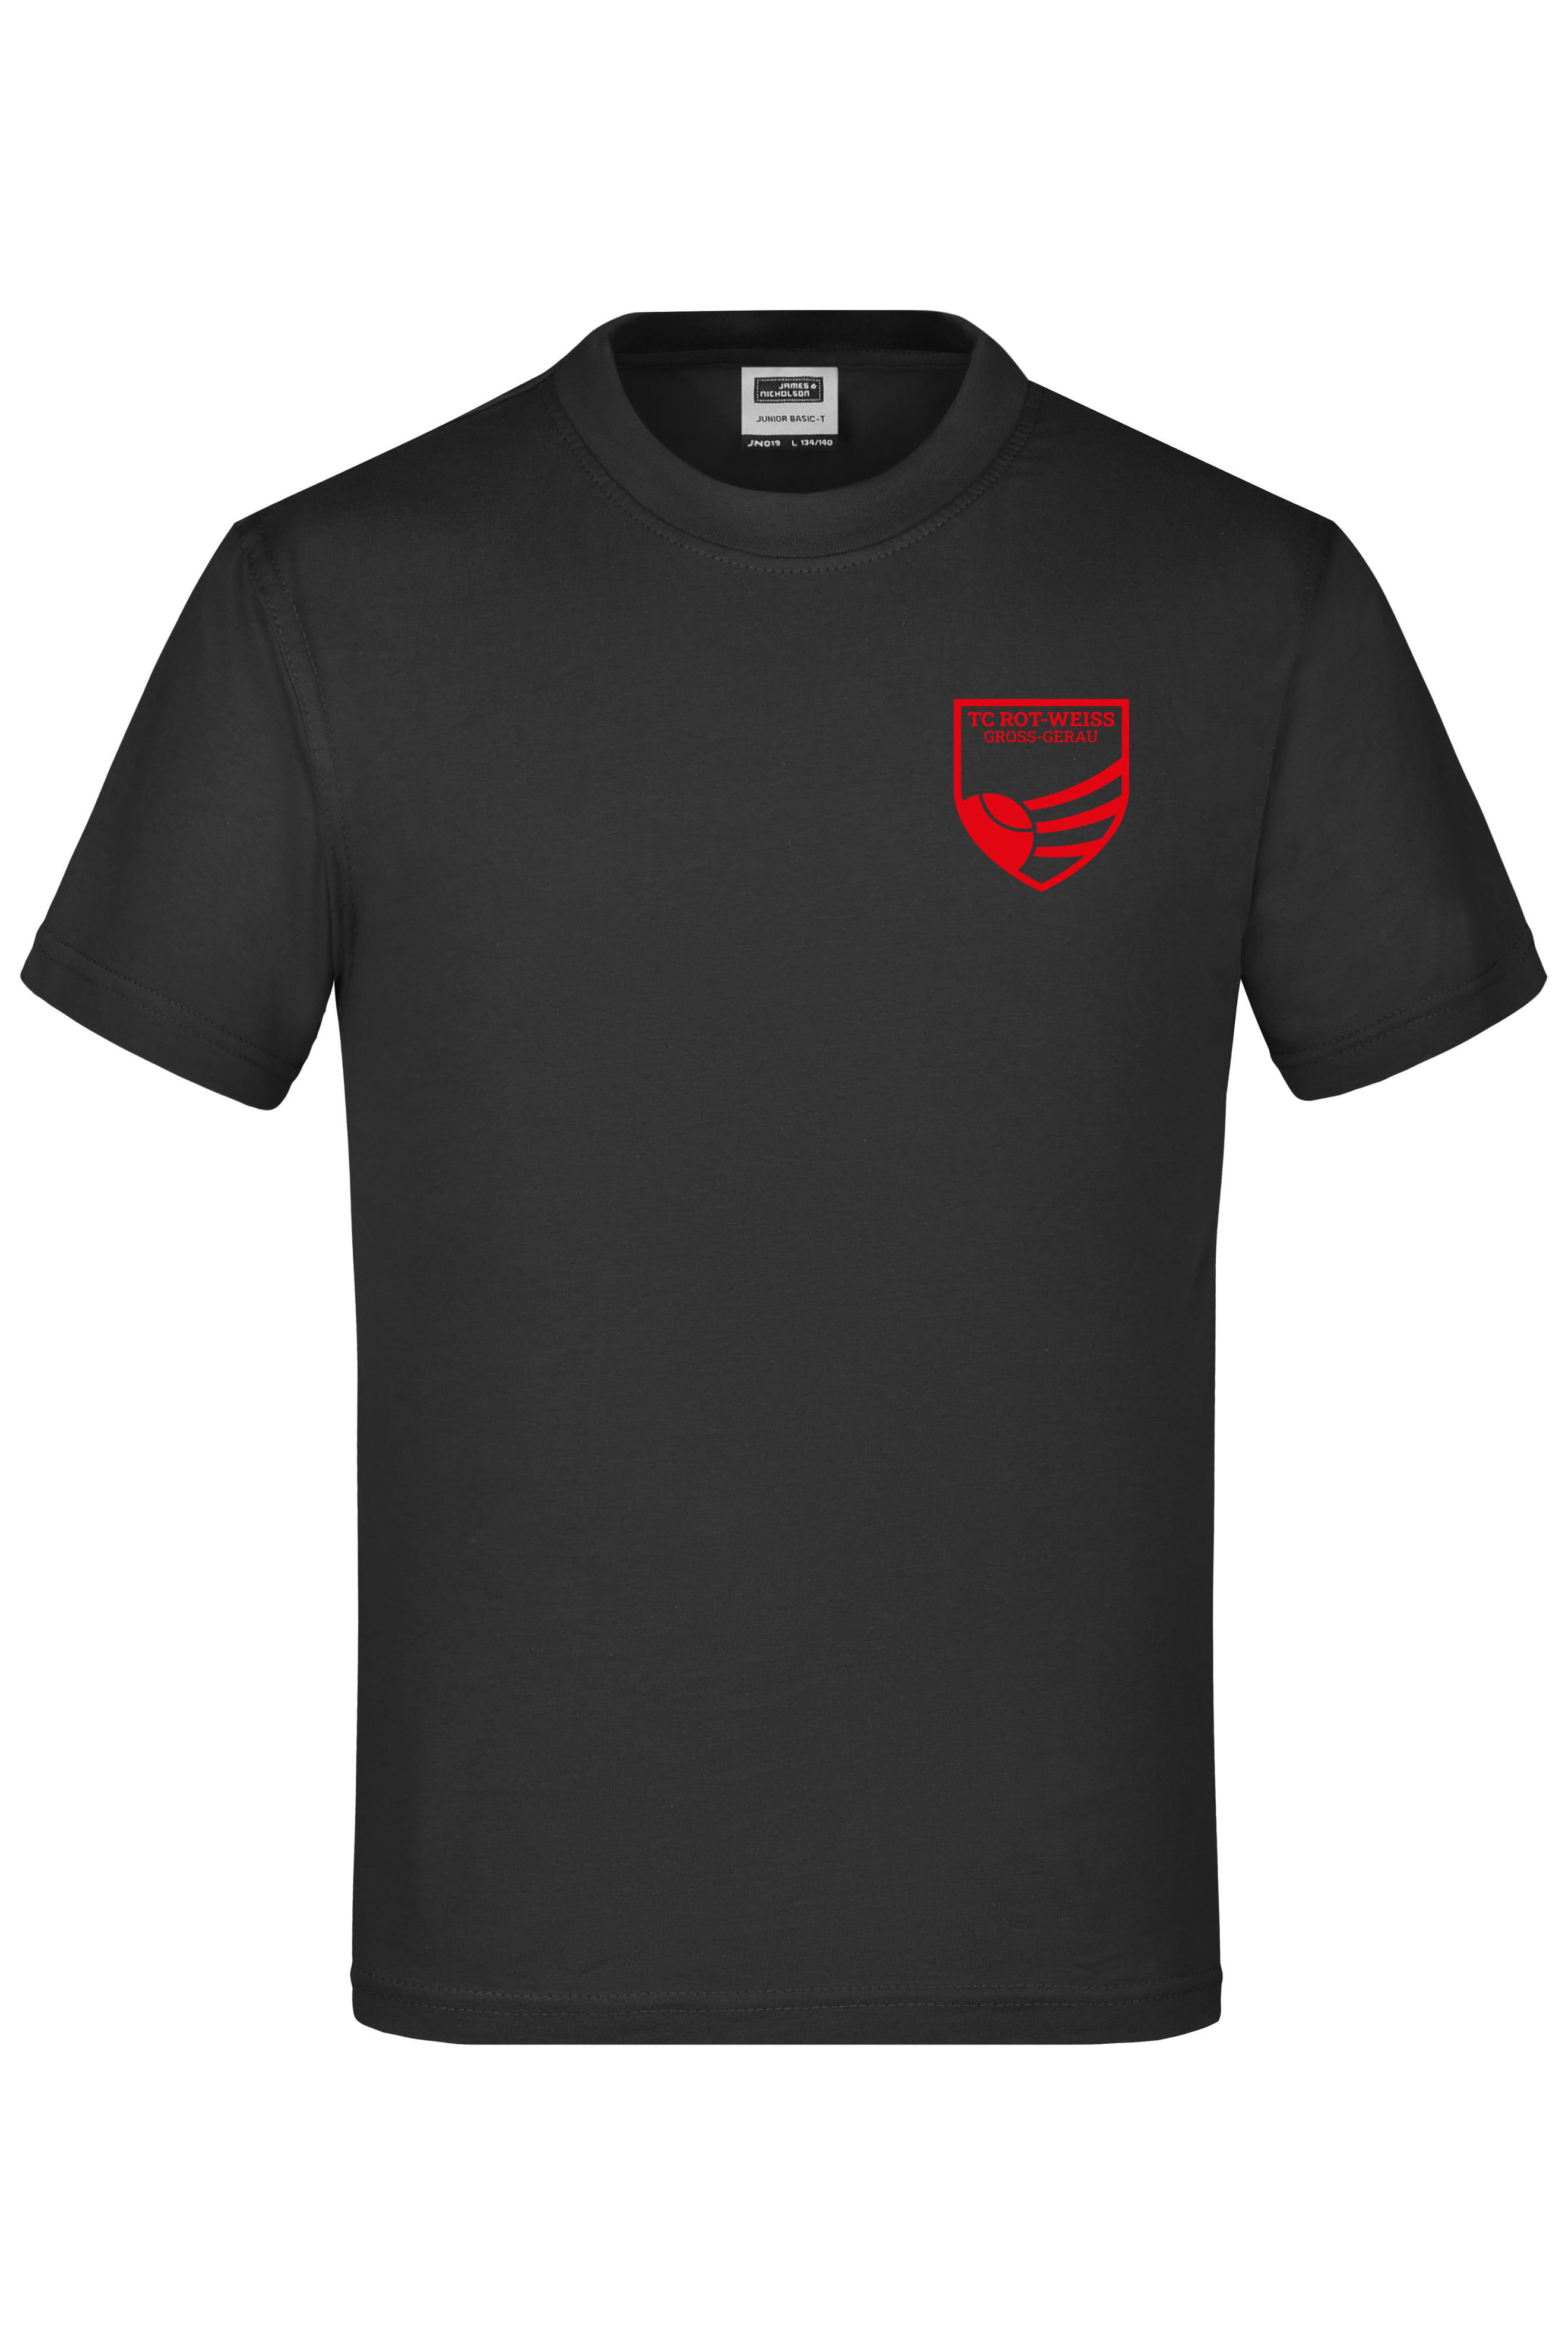 TC Rot-Weiss - Vorteil Dein Name - Kinder T-Shirt rot auf schwarz